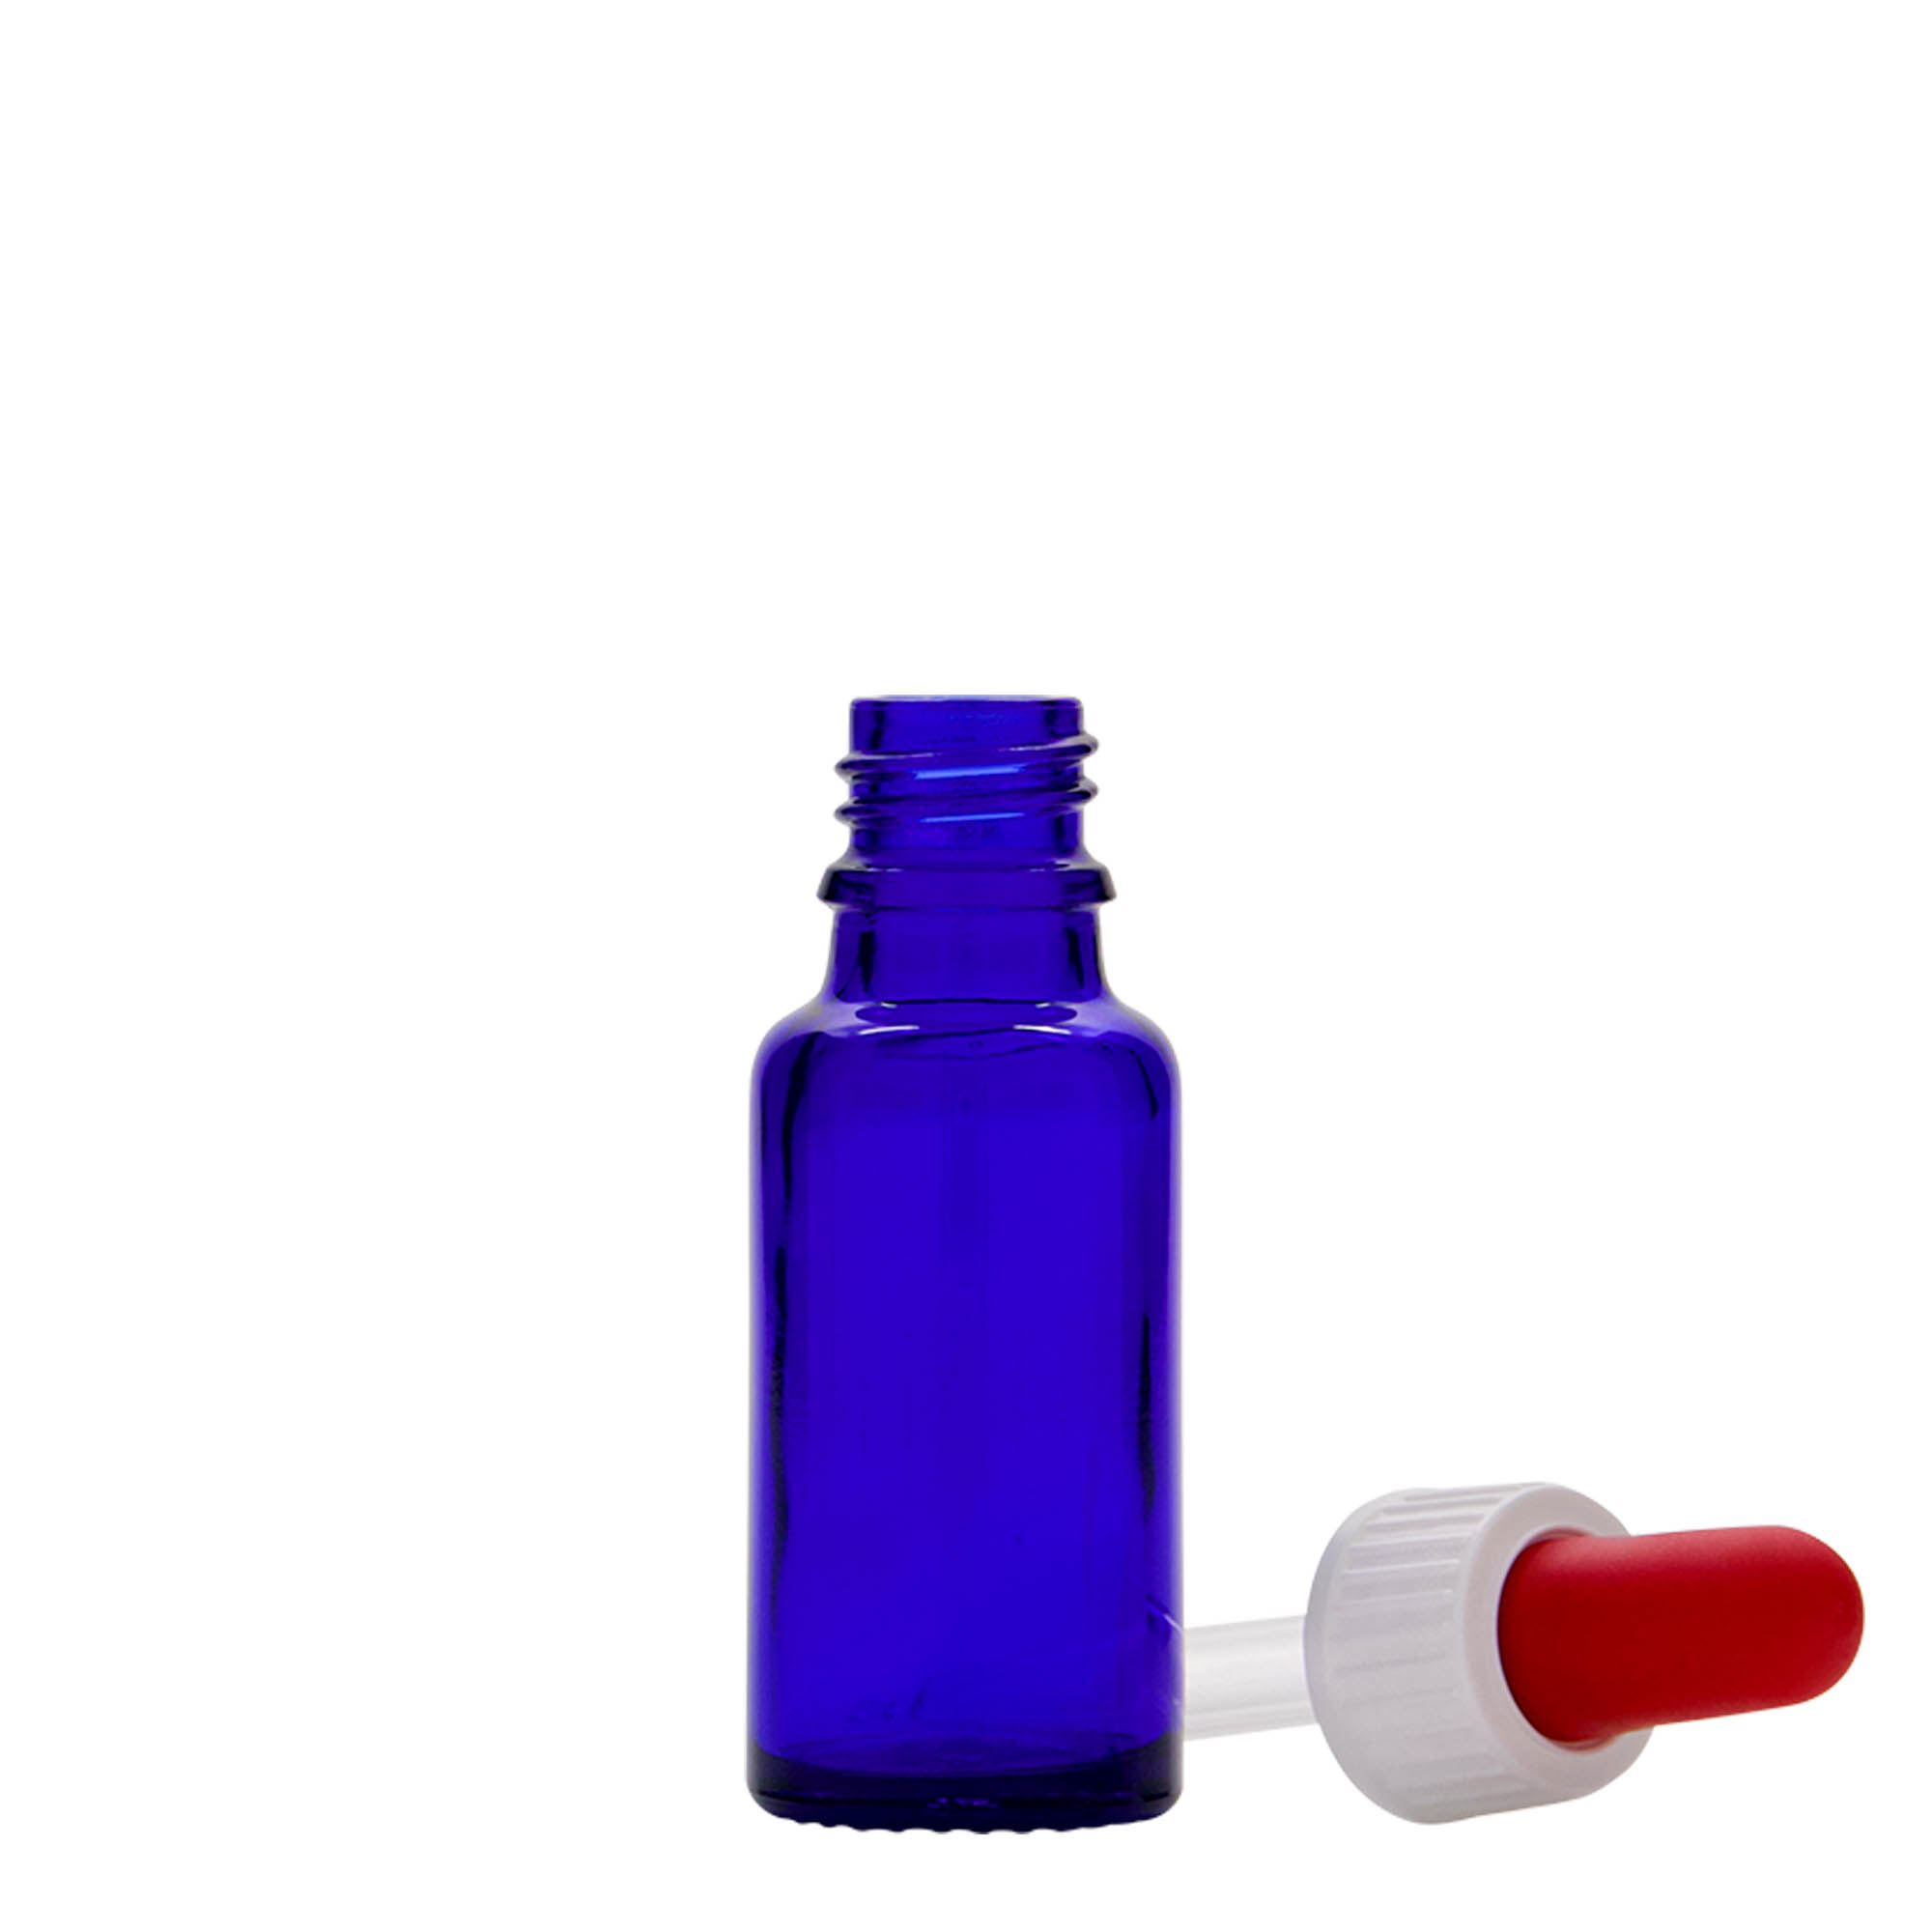 20 ml butelka farmaceutyczna z pipetą, szkło, kolor błękit królewski i czerwony, zamknięcie: DIN 18